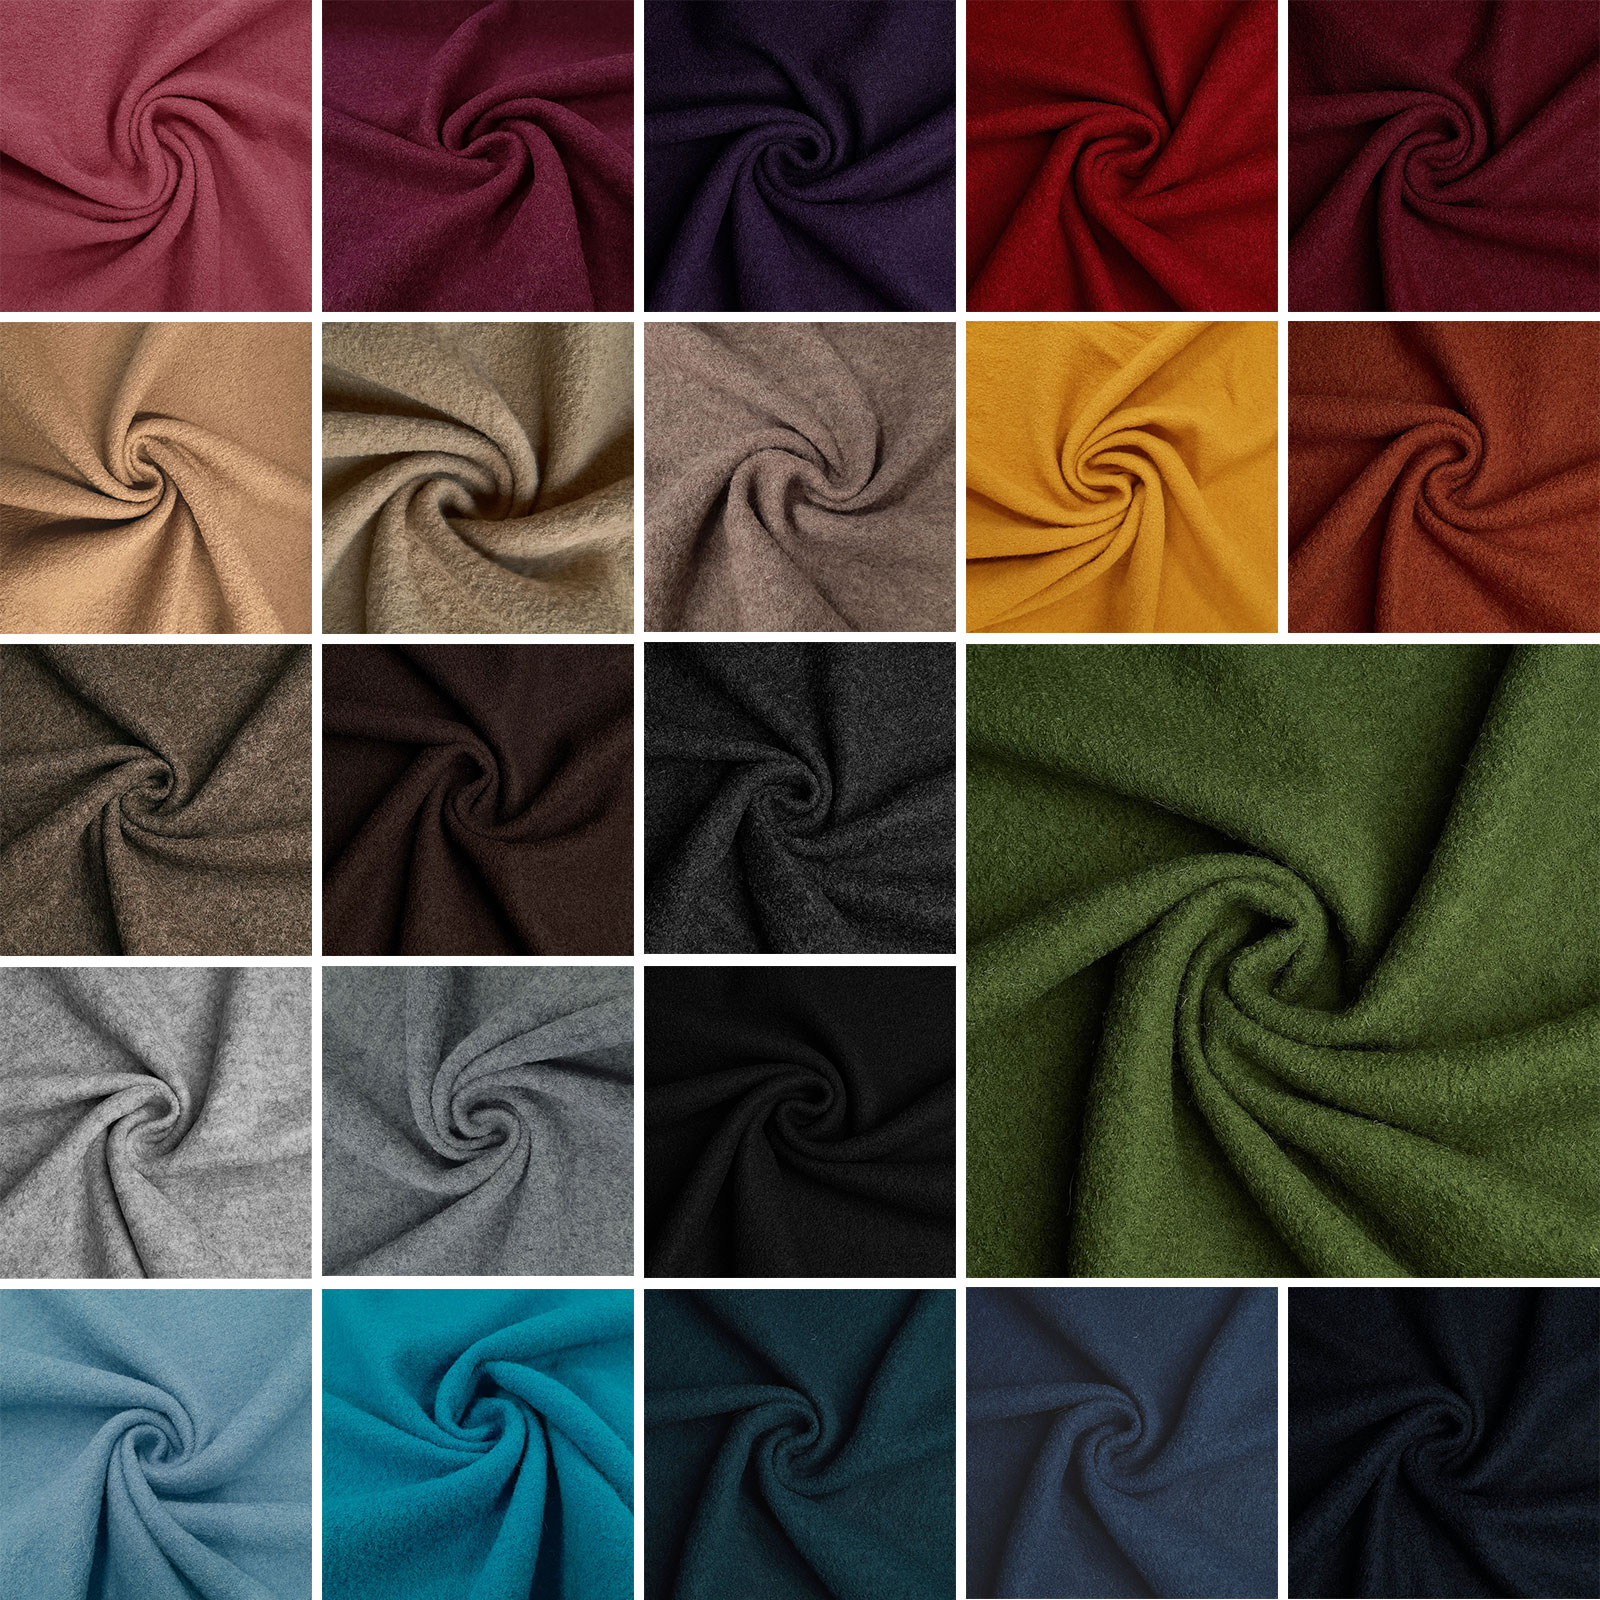 Fabian - Boiled Wool / Loden Fabric - 100% Virgin Wool